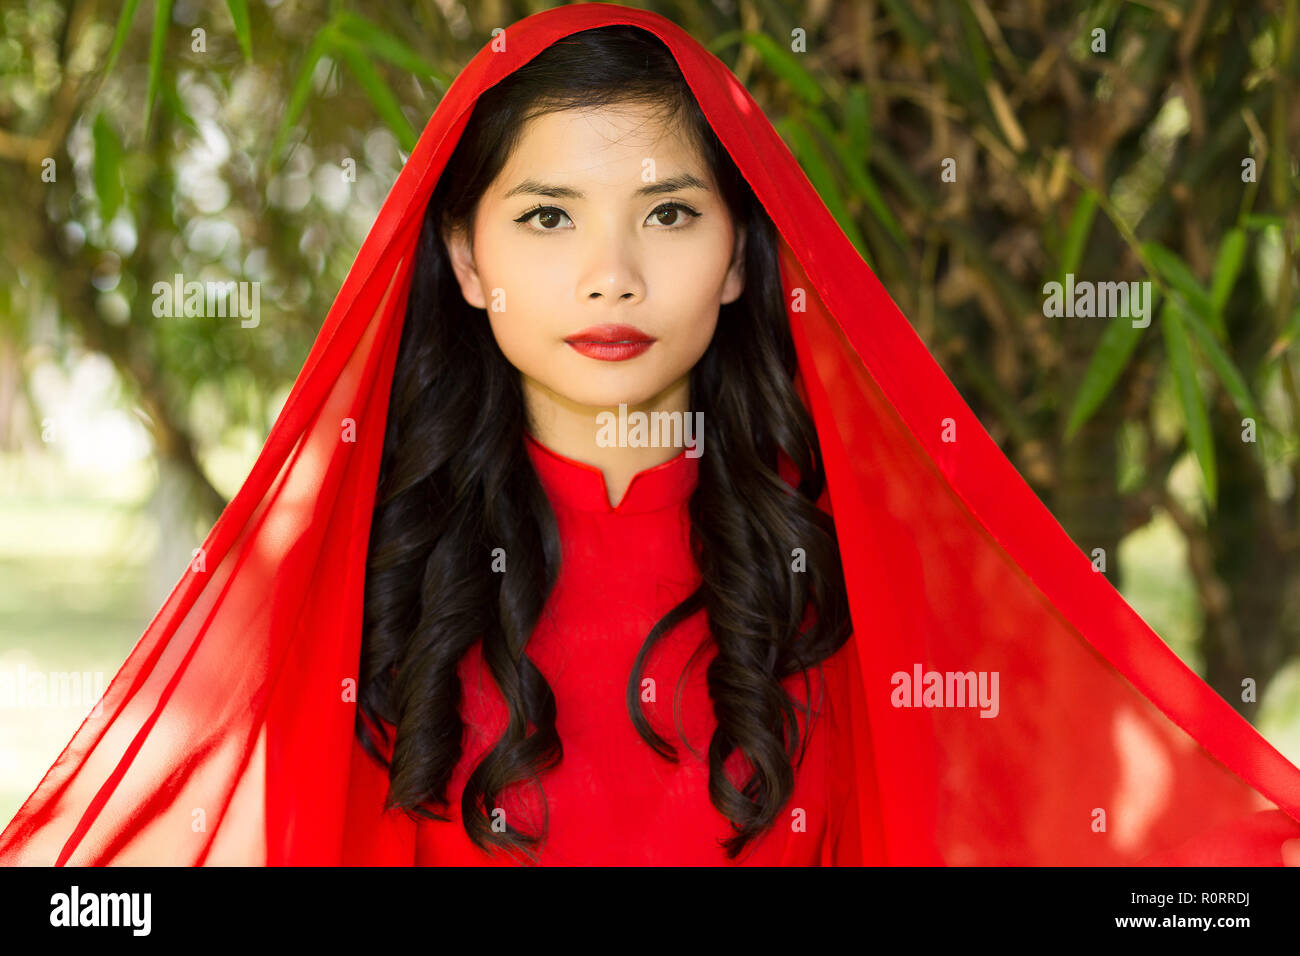 Close up Junge hübsche asiatische Frau im roten Kleid mit Kopftuch mit  Lange wellige Haare in die Kamera schaut Stockfotografie - Alamy